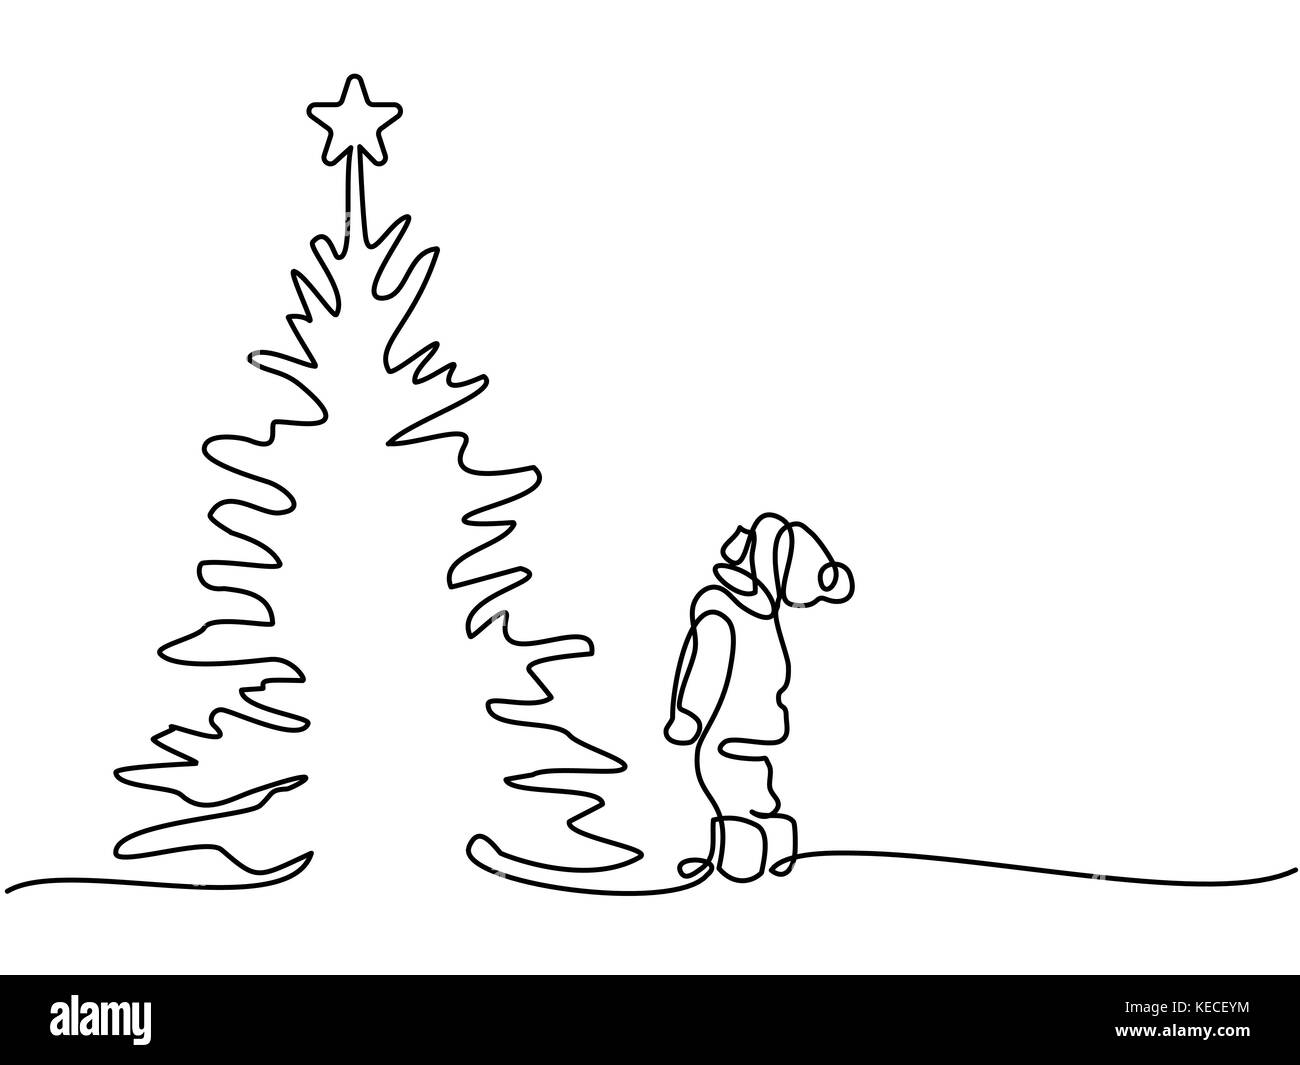 Neues Jahr Karte Junge an Weihnachtsbaum suchen Stock Vektor